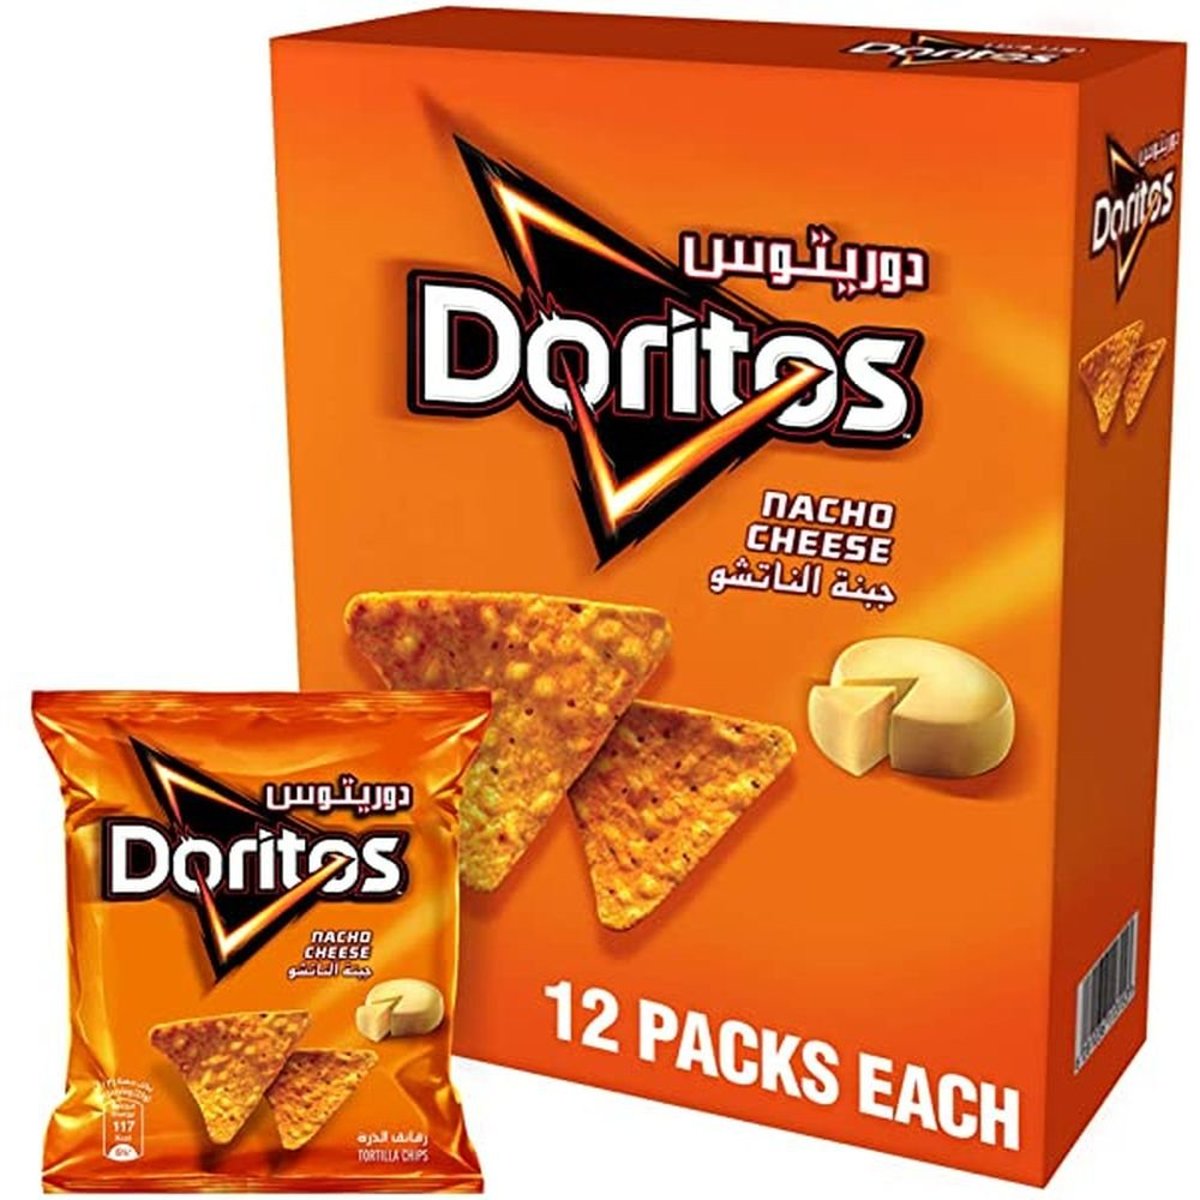 Doritos - Nacho Cheese - Flavored Tortilla Chips - 23 gm (12 Packs)